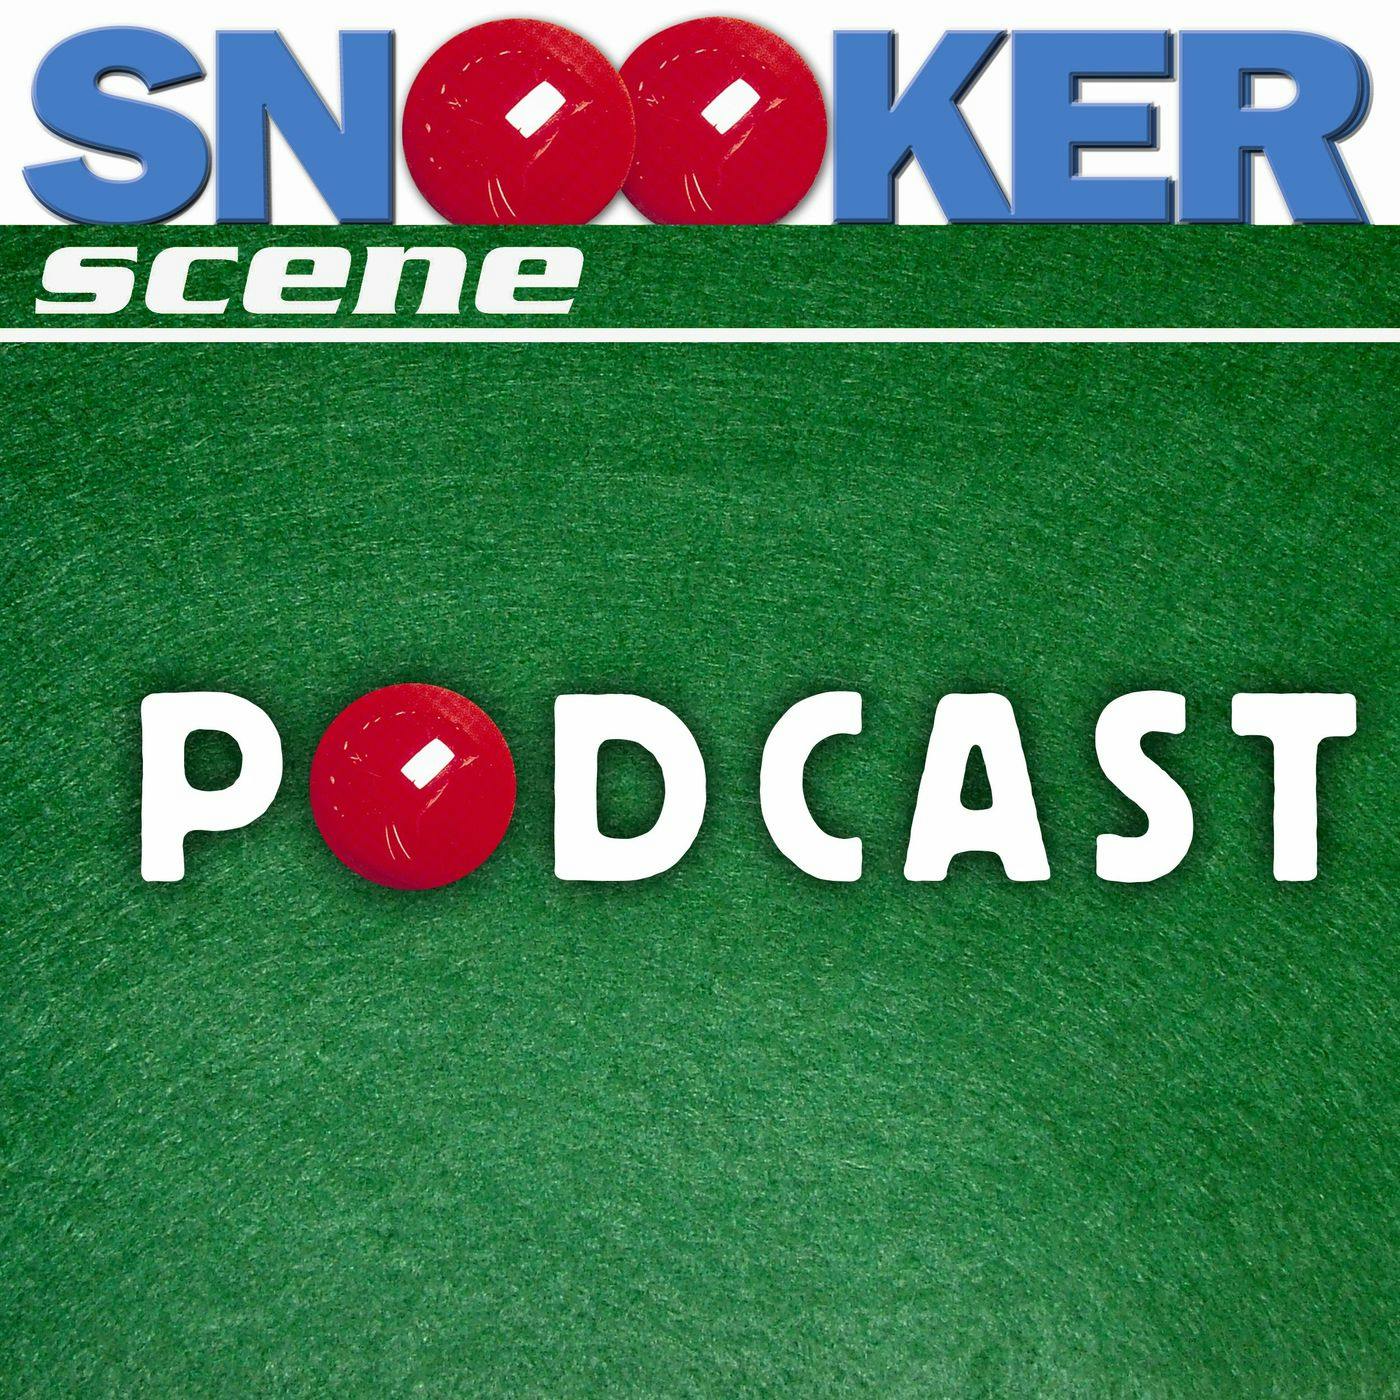 Snooker Scene Podcast episode 188 - The Acute Side of Obtuse